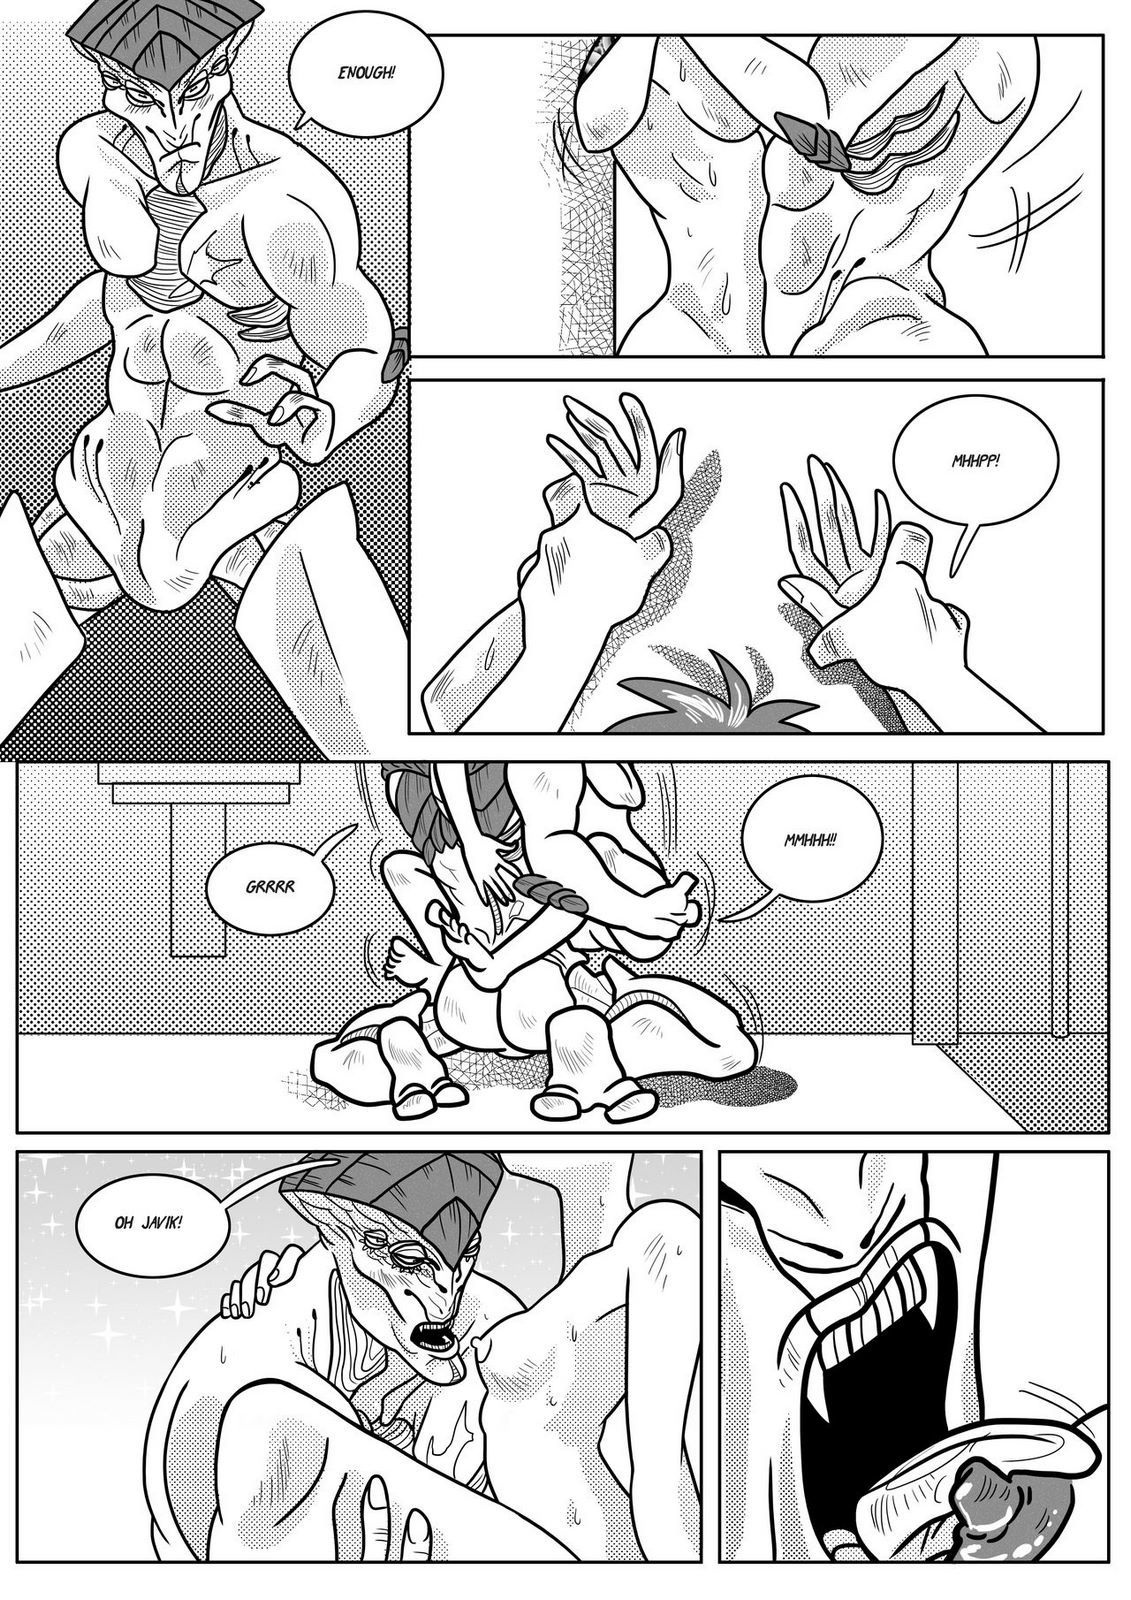 Javik Romance (Mass Effect) by VegaNya page 11